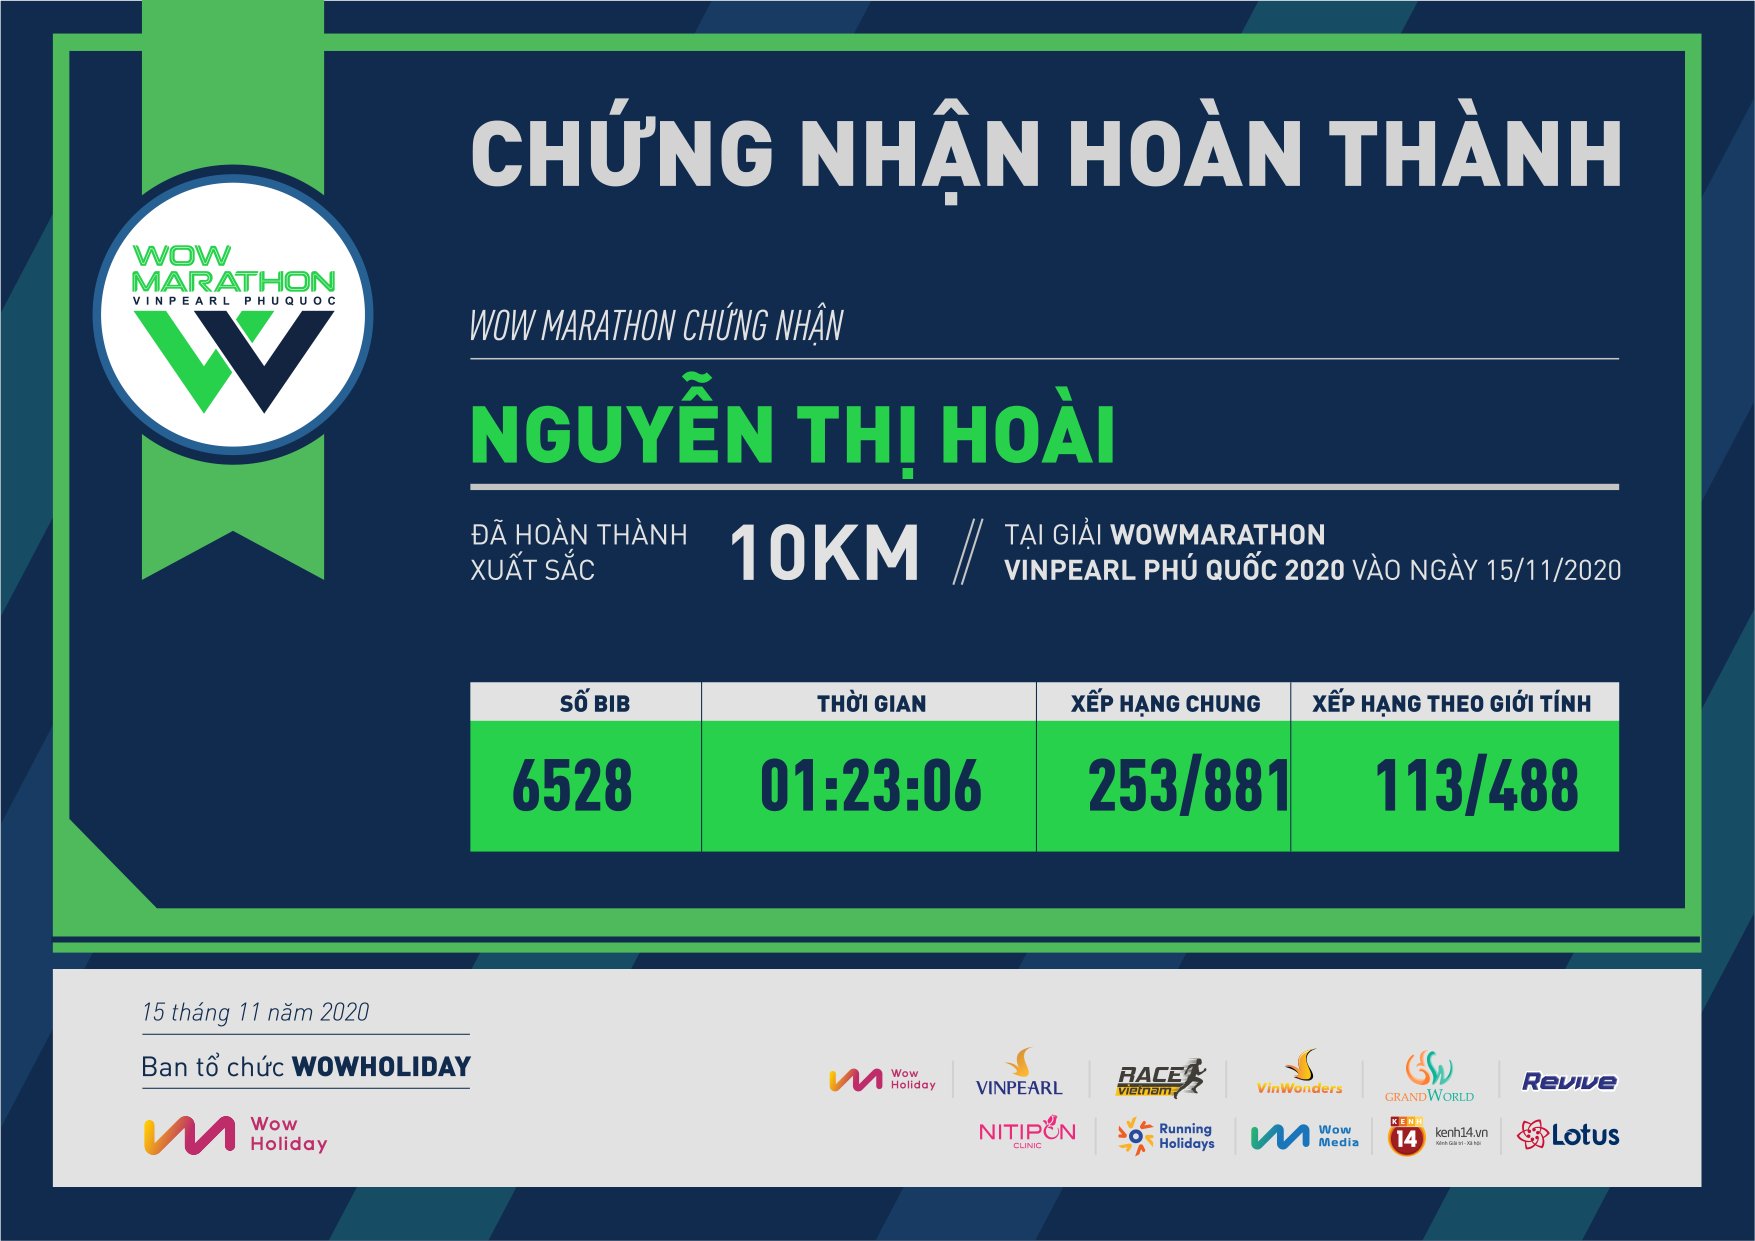 6528 - Nguyễn Thị Hoài